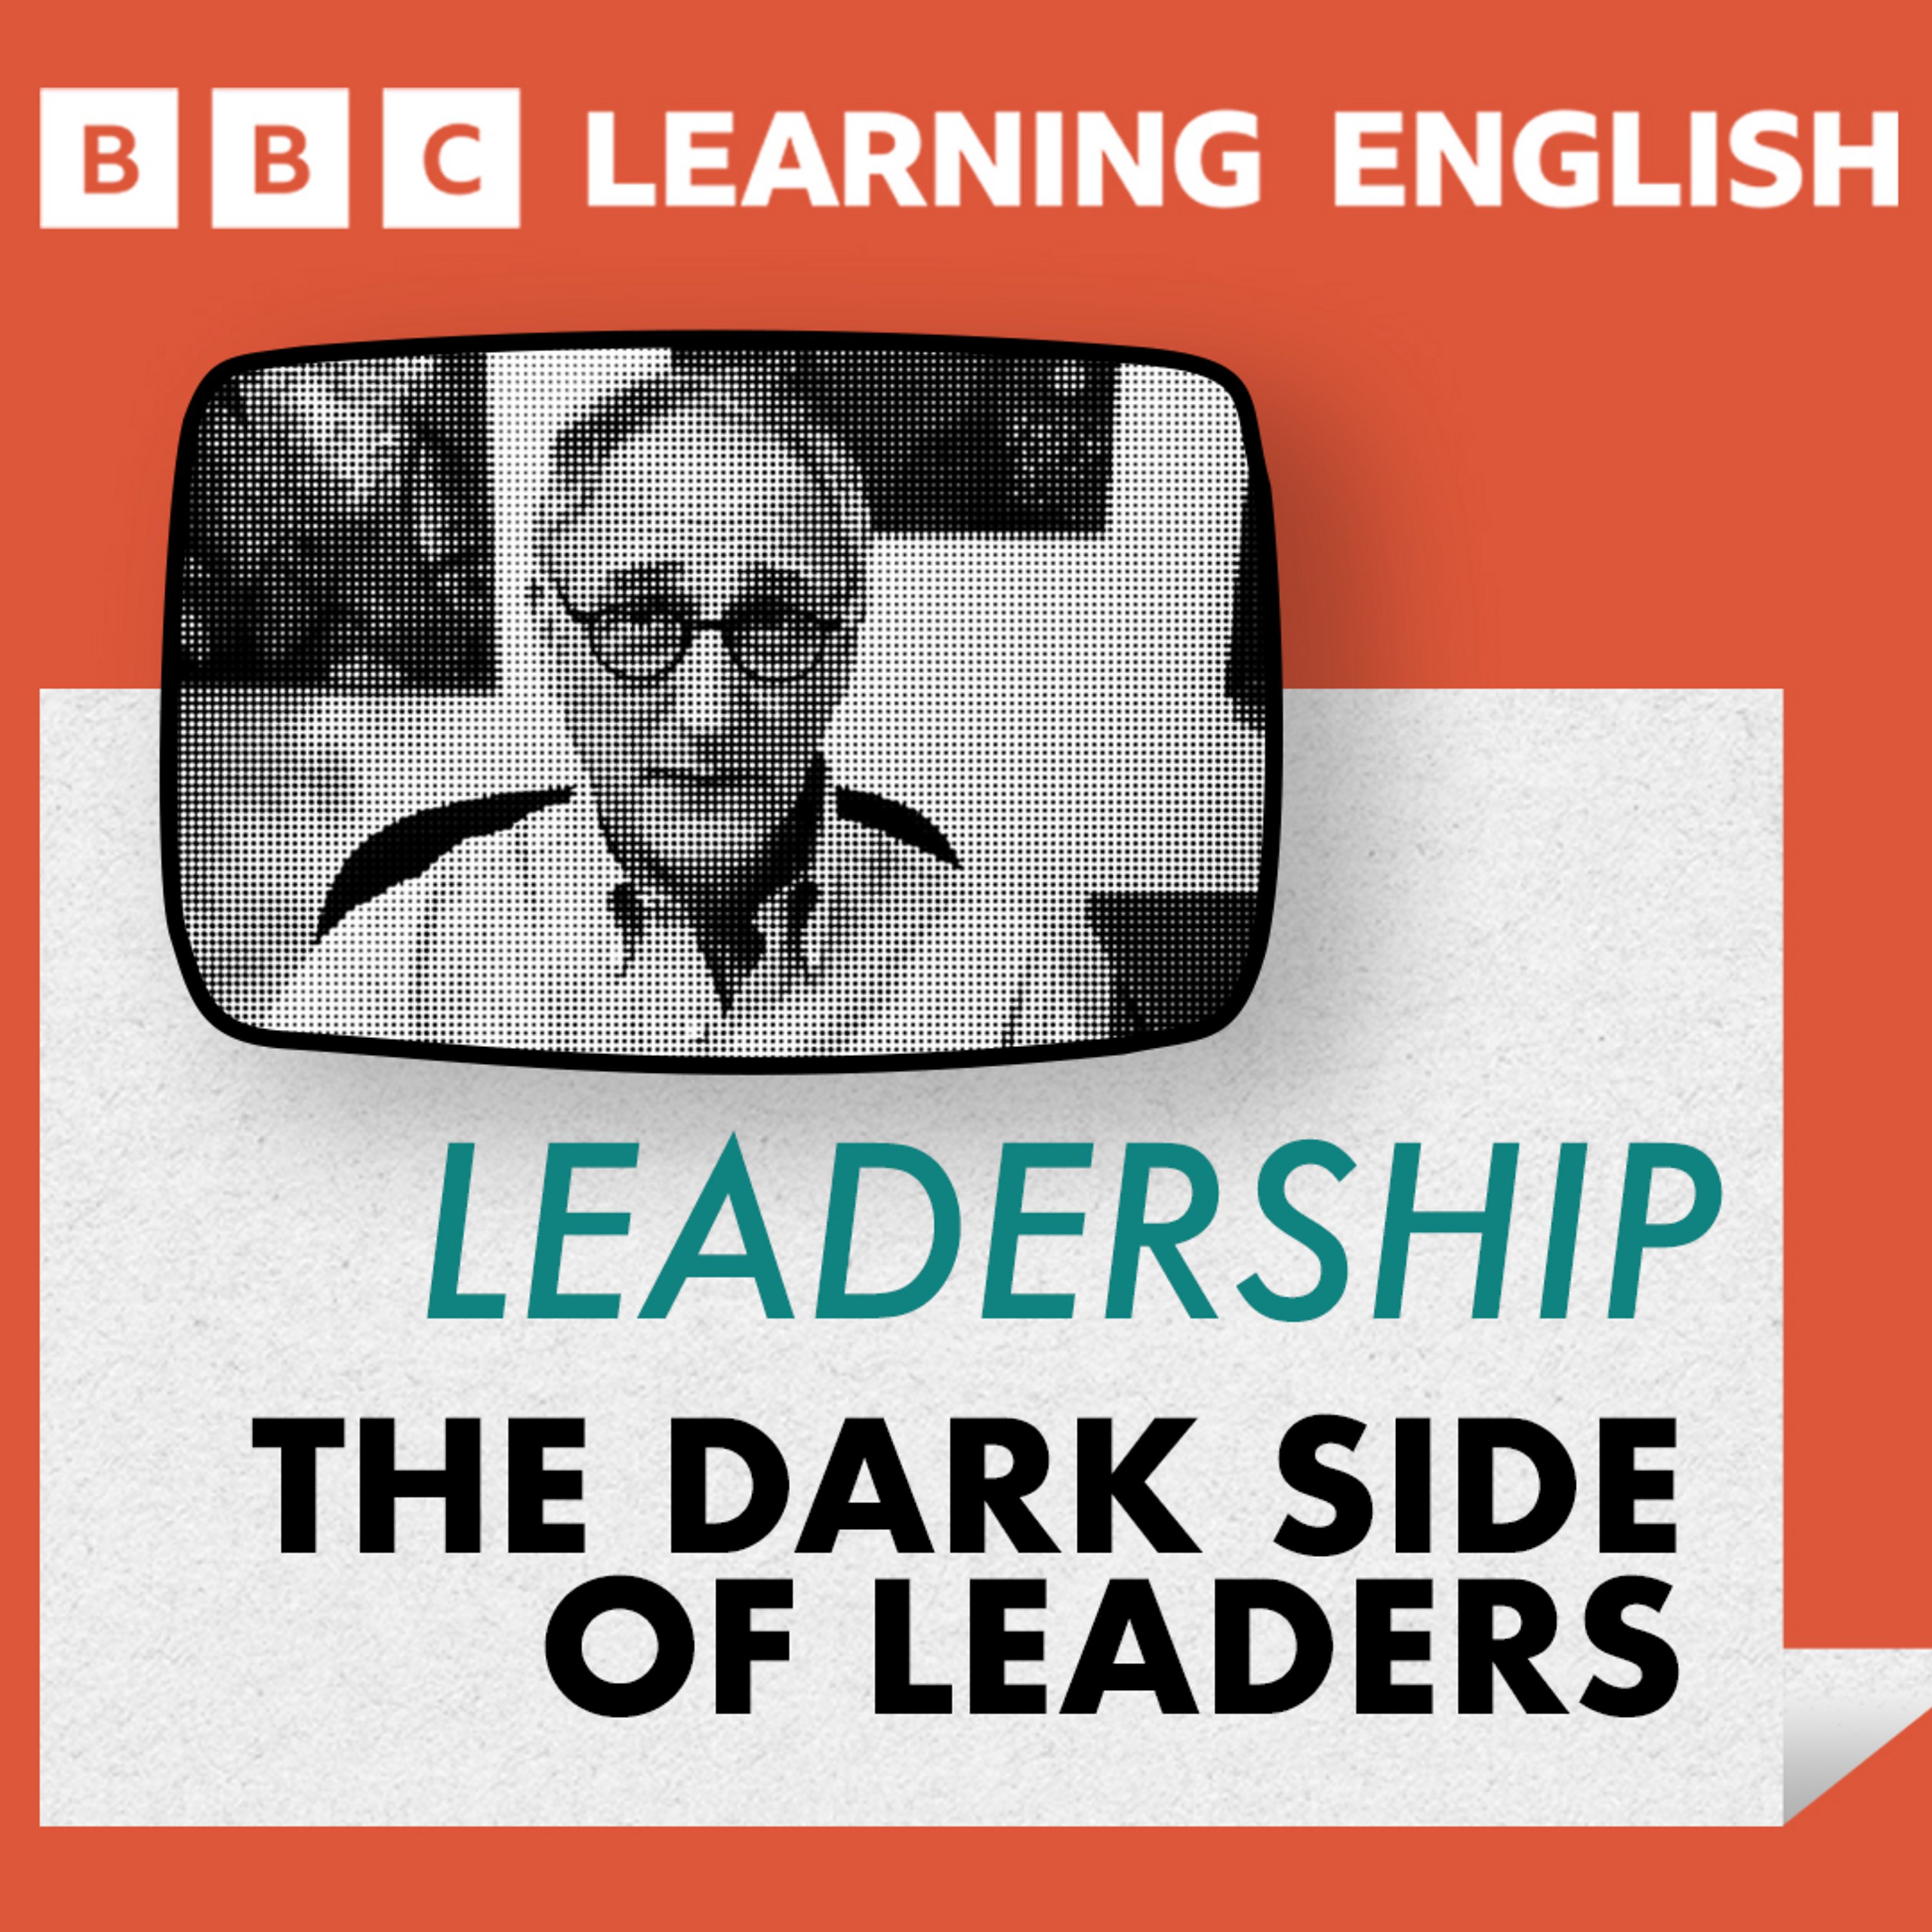 Leadership: The dark side of leaders